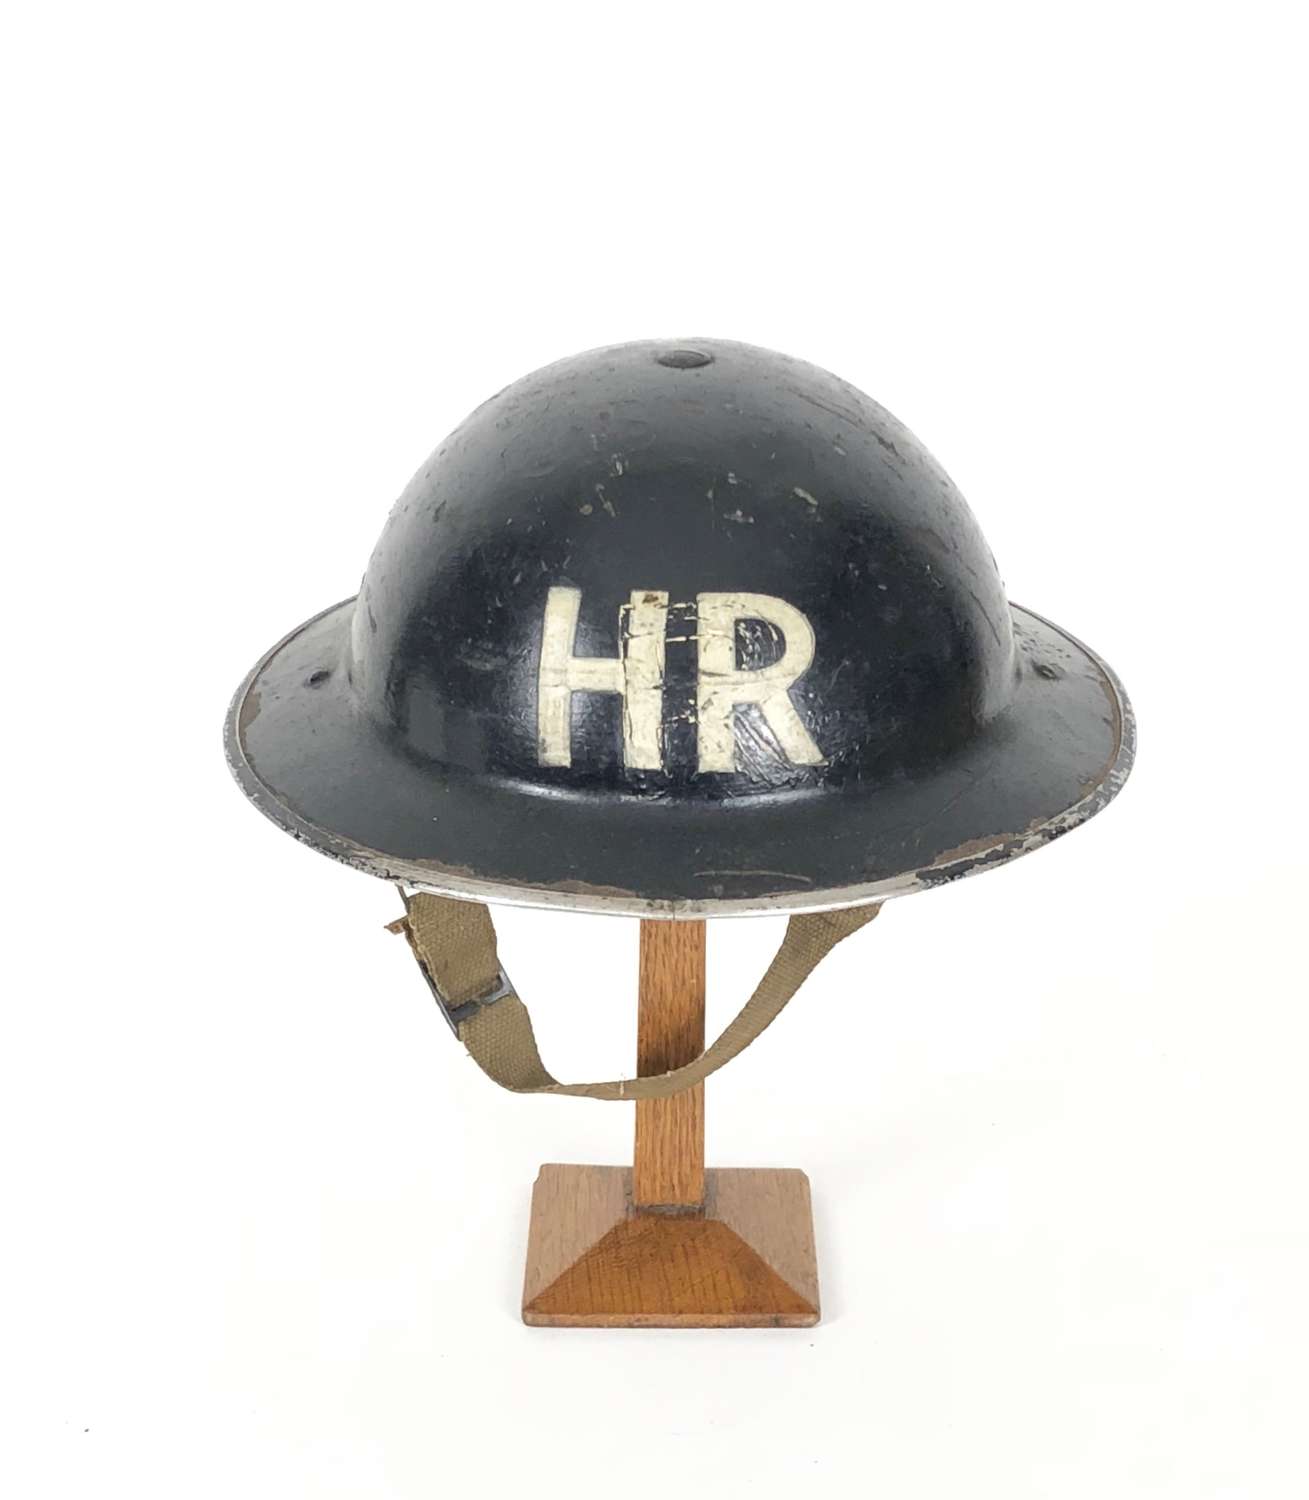 WW2 Home Front Heavy Rescue ARP Helmet.